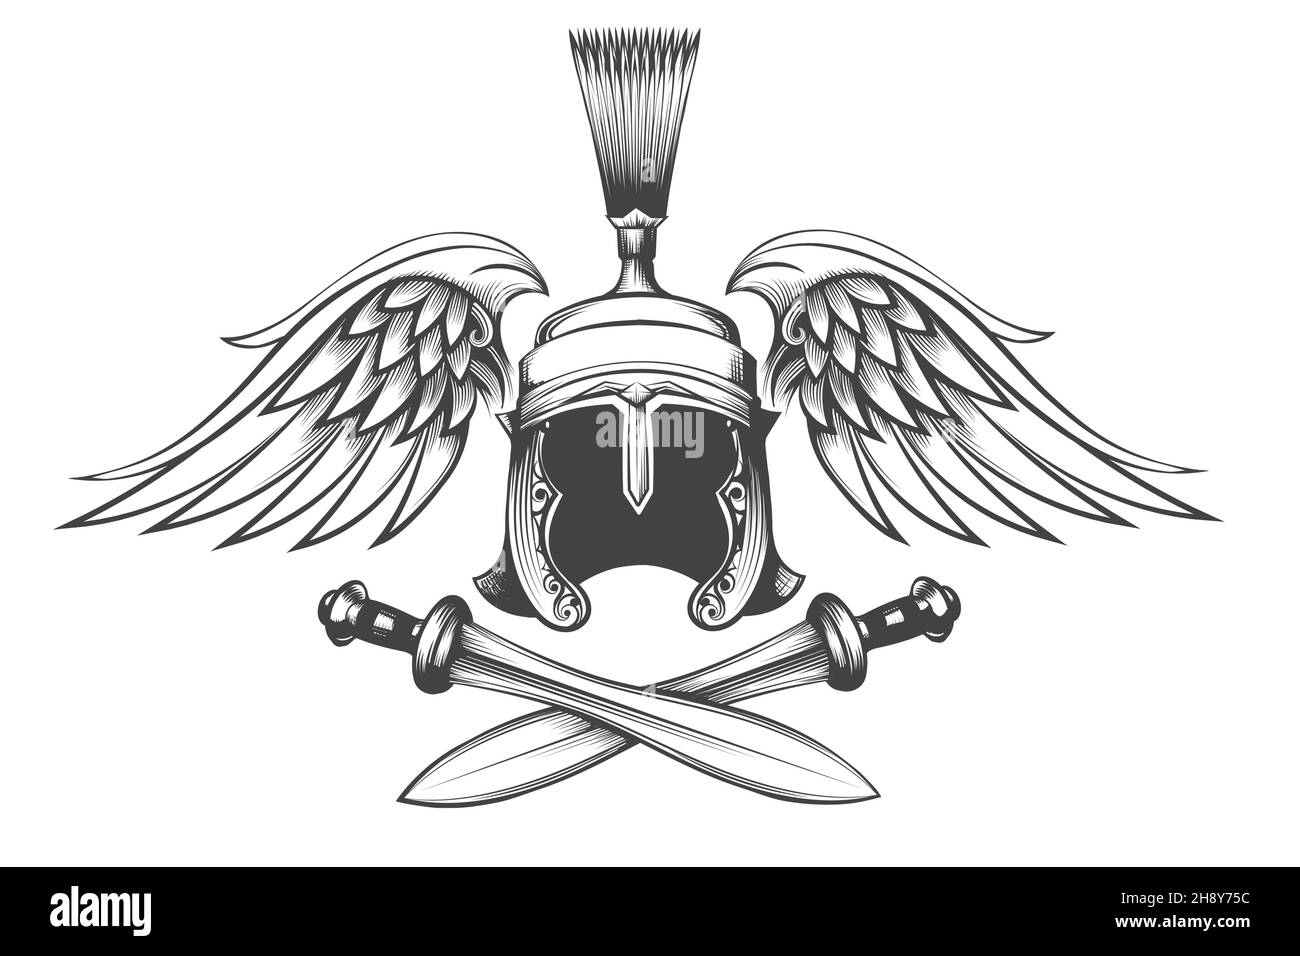 Tätowierung von Legionärhelm des Römischen Reiches mit Schwertern und Flügeln isoliert auf Weiß. Vektorgrafik. Stock Vektor